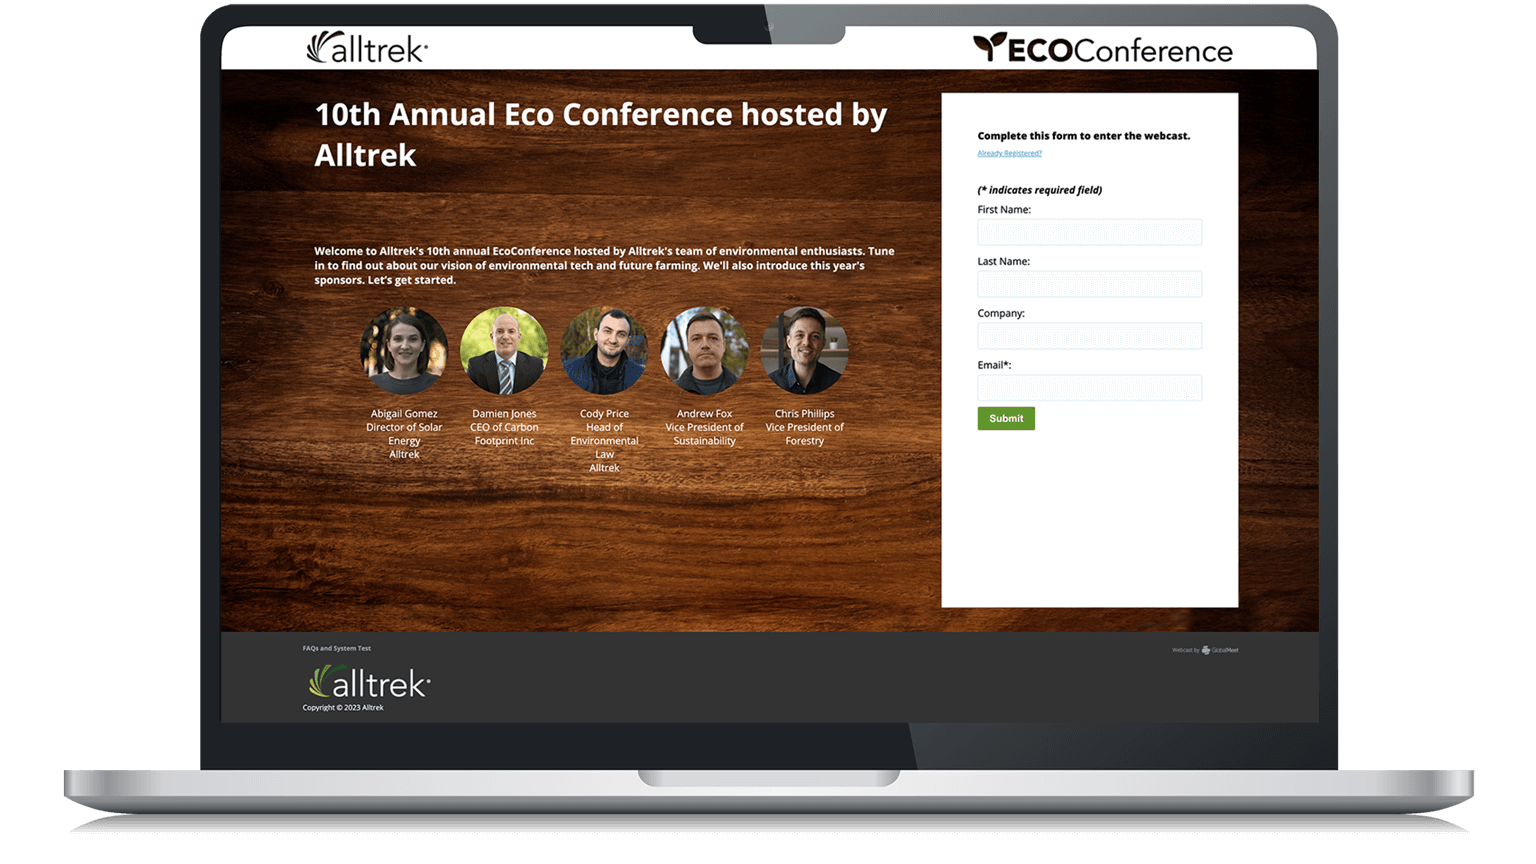 Alltrek EcoConference event registration page on a laptop